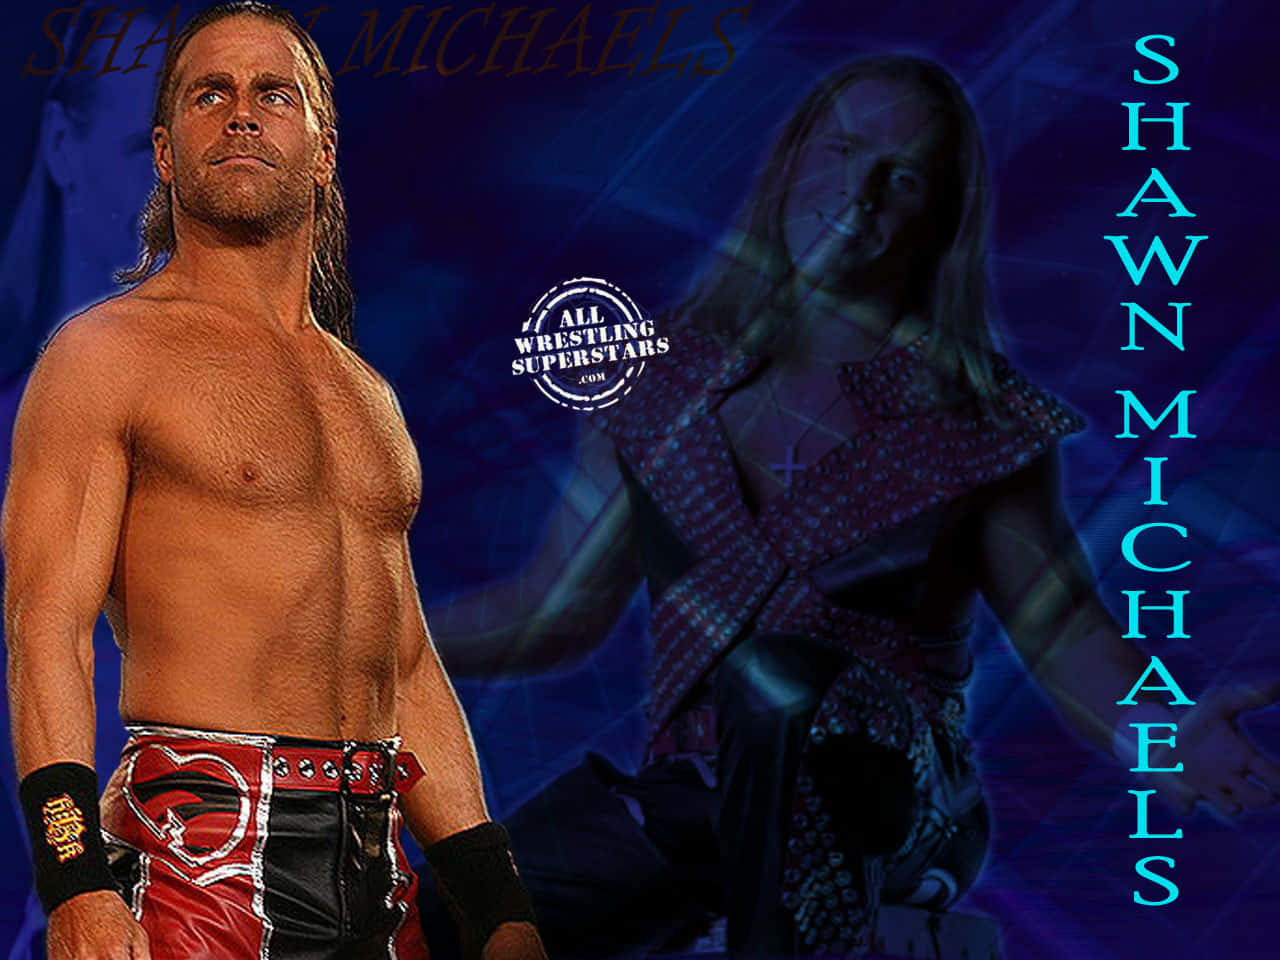 Shawn Michaels Wrestling Superstar Digital Design Background